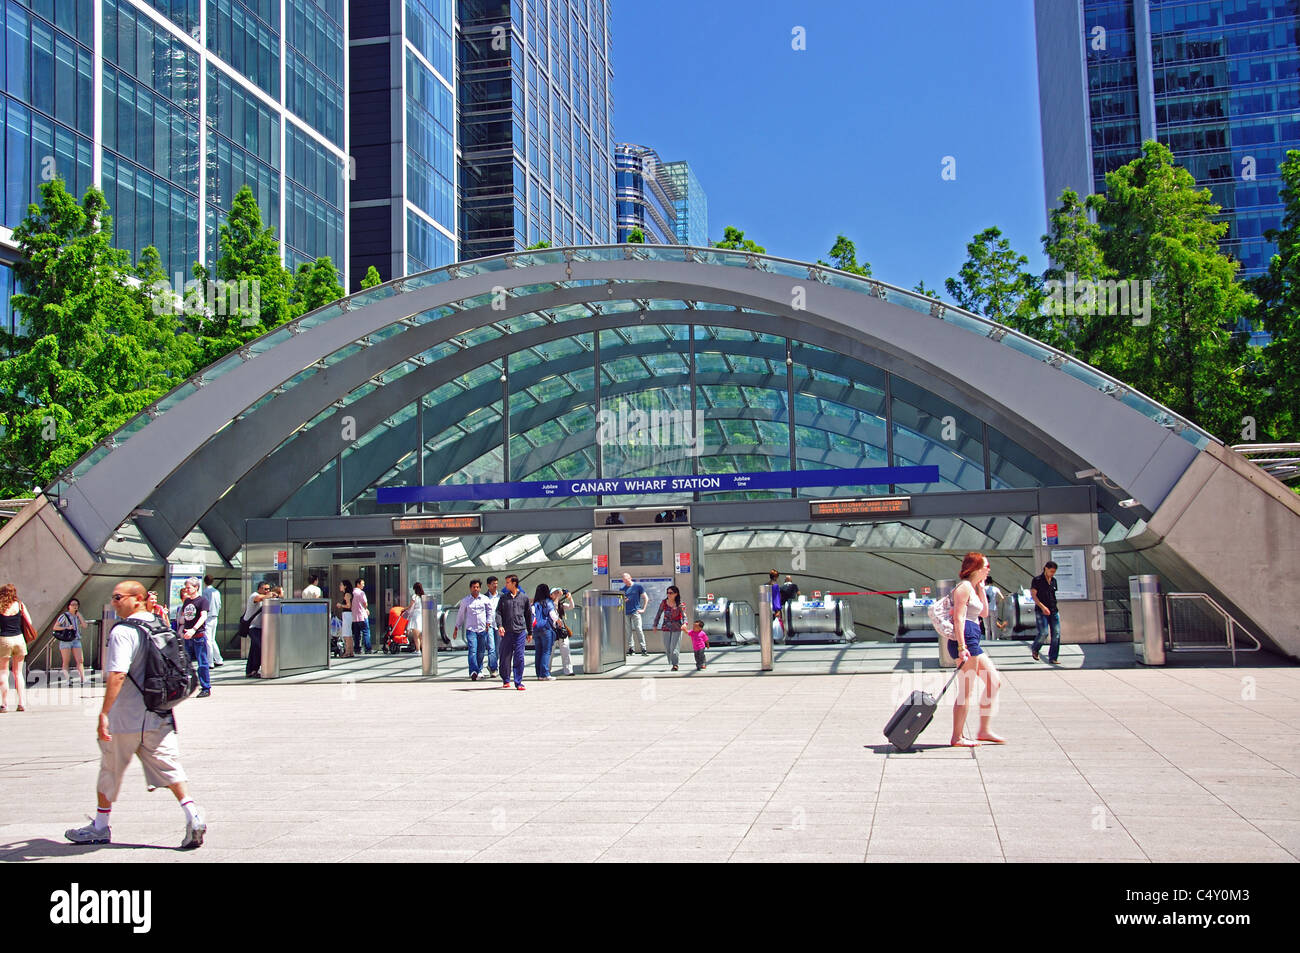 La station de métro Canary Wharf, West Plaza, Canary Wharf, London Borough de Tower Hamlets, Londres, Angleterre, Royaume-Uni Banque D'Images